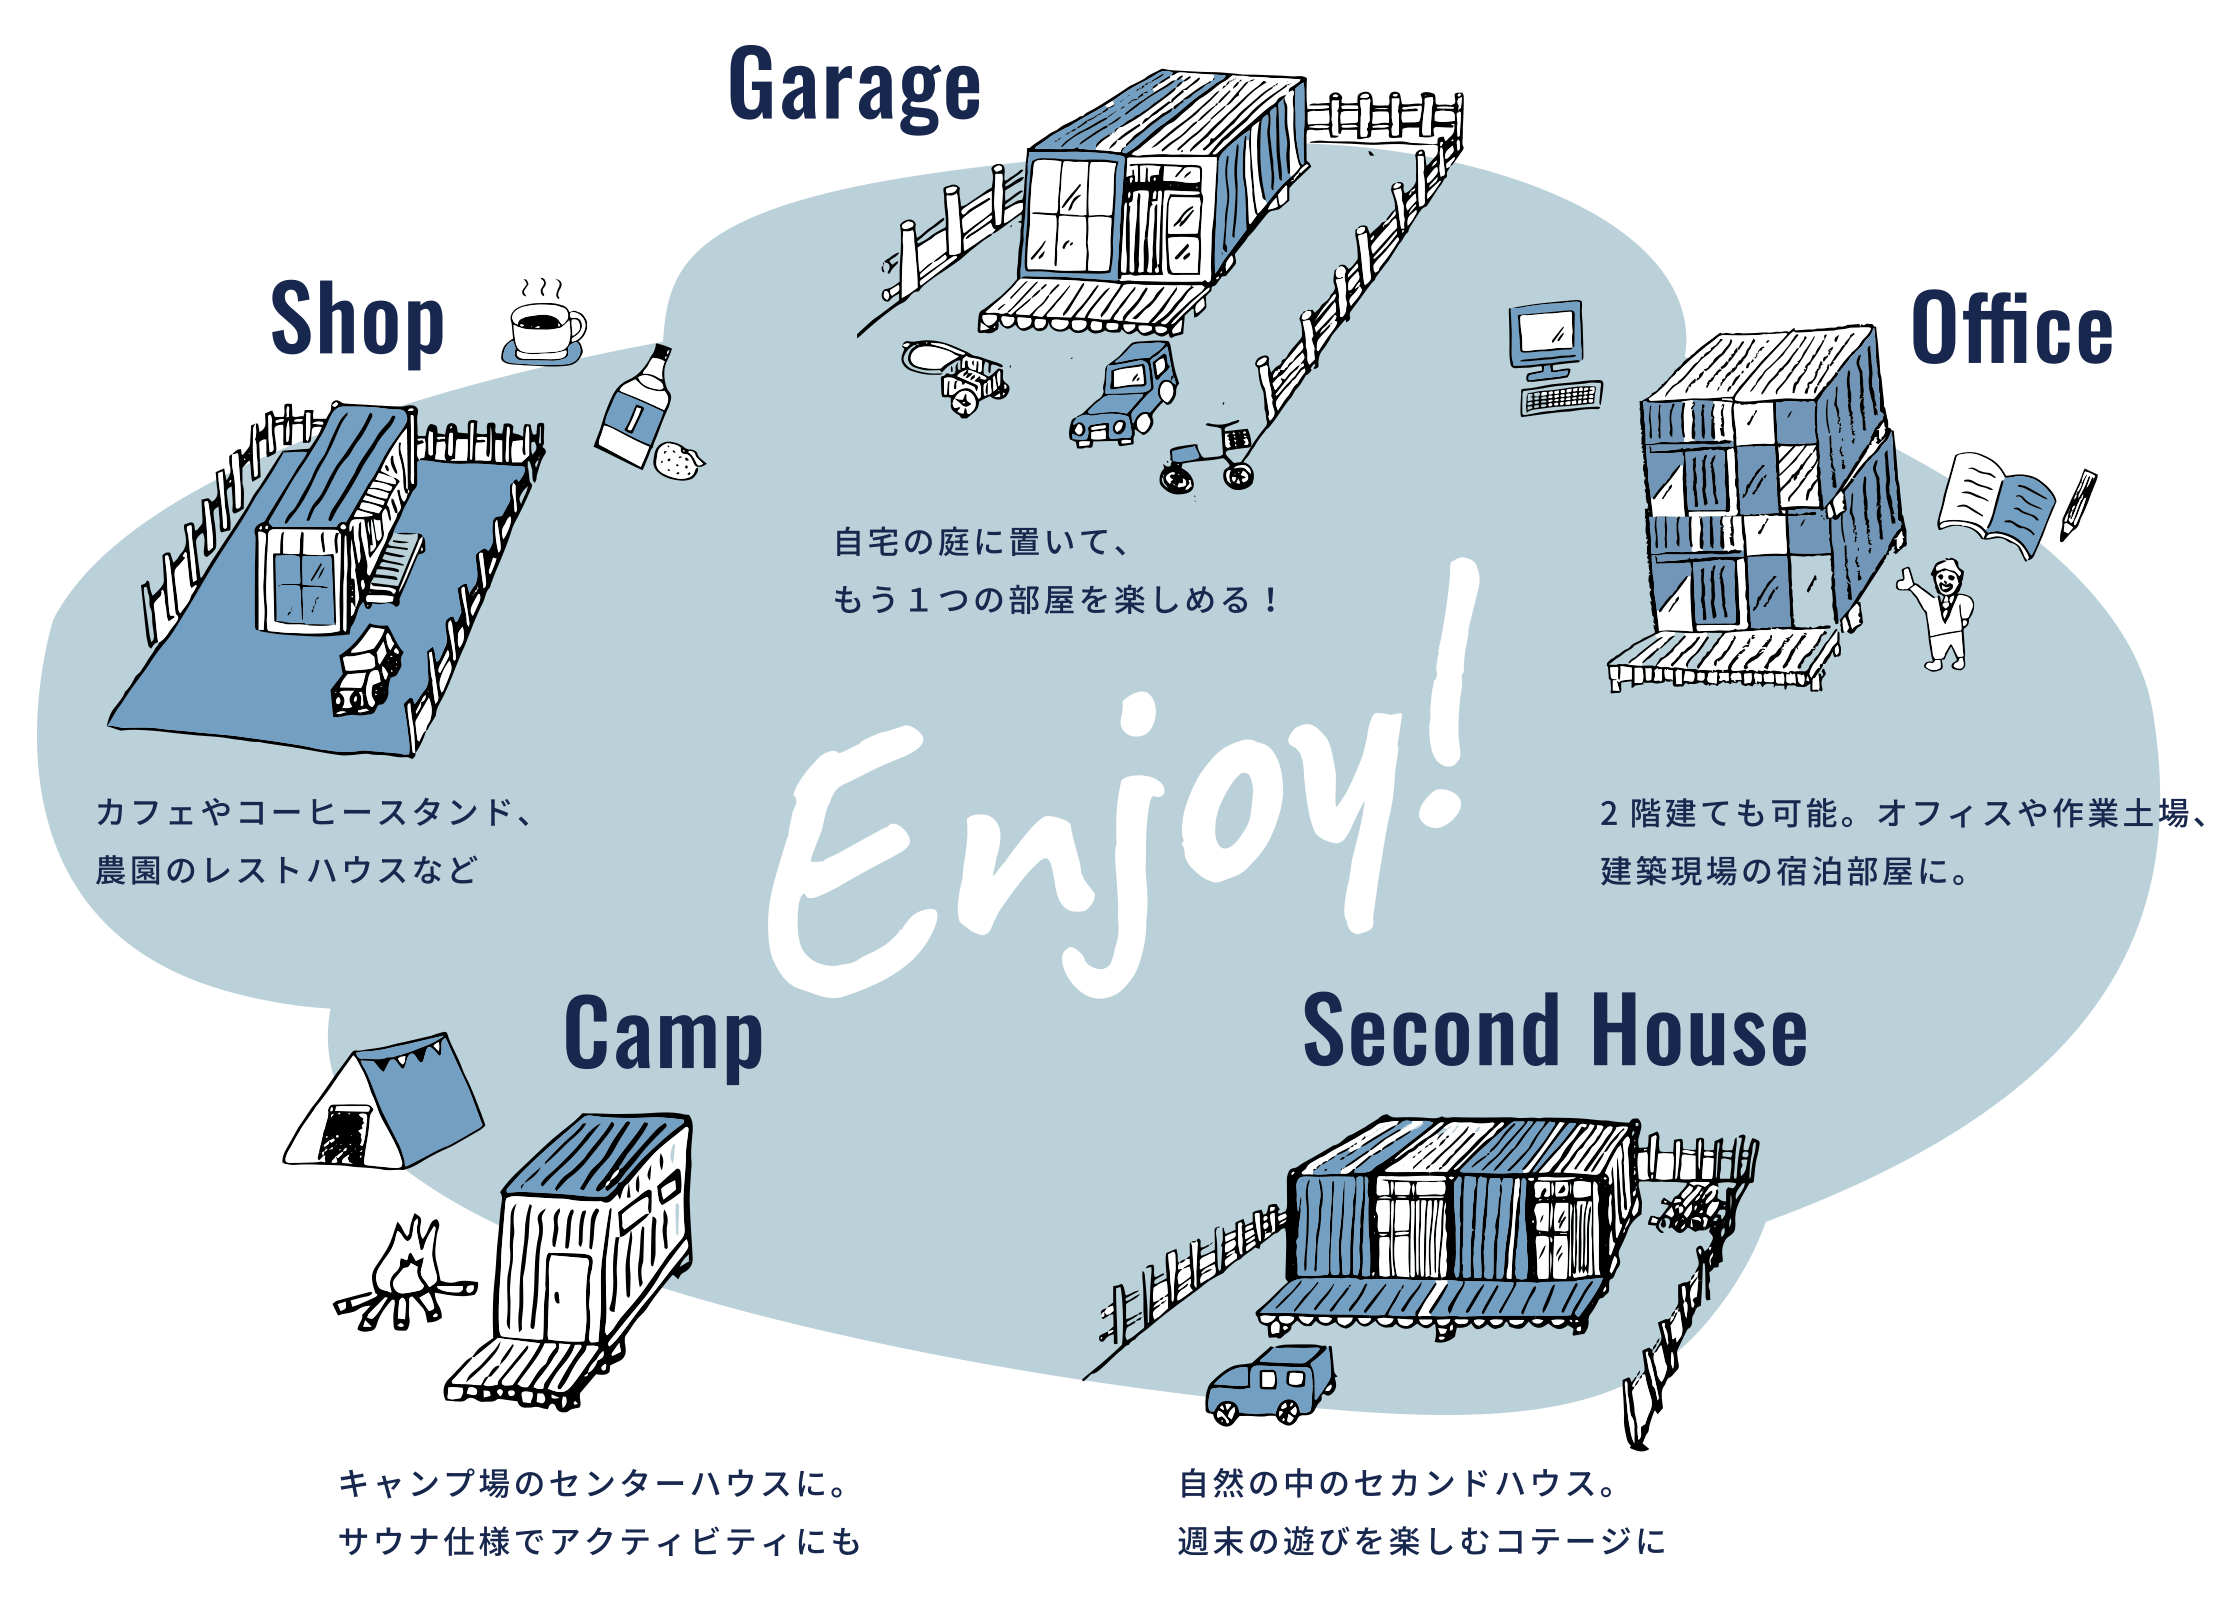 ・Garage - 自宅の庭に置いて、もう１つの部屋を楽しめる！ / ・Office - 2階建ても可能。オフィスや作業土場、建築現場の宿泊部屋に。 / ・Shop - カフェやコーヒースタンド、農園のレストハウスなど / ・Second House - 自然の中のセカンドハウス。週末の遊びを楽しむコテージに / ・Camp - キャンプ場のセンターハウスに。サウナ仕様でアクティビティにも